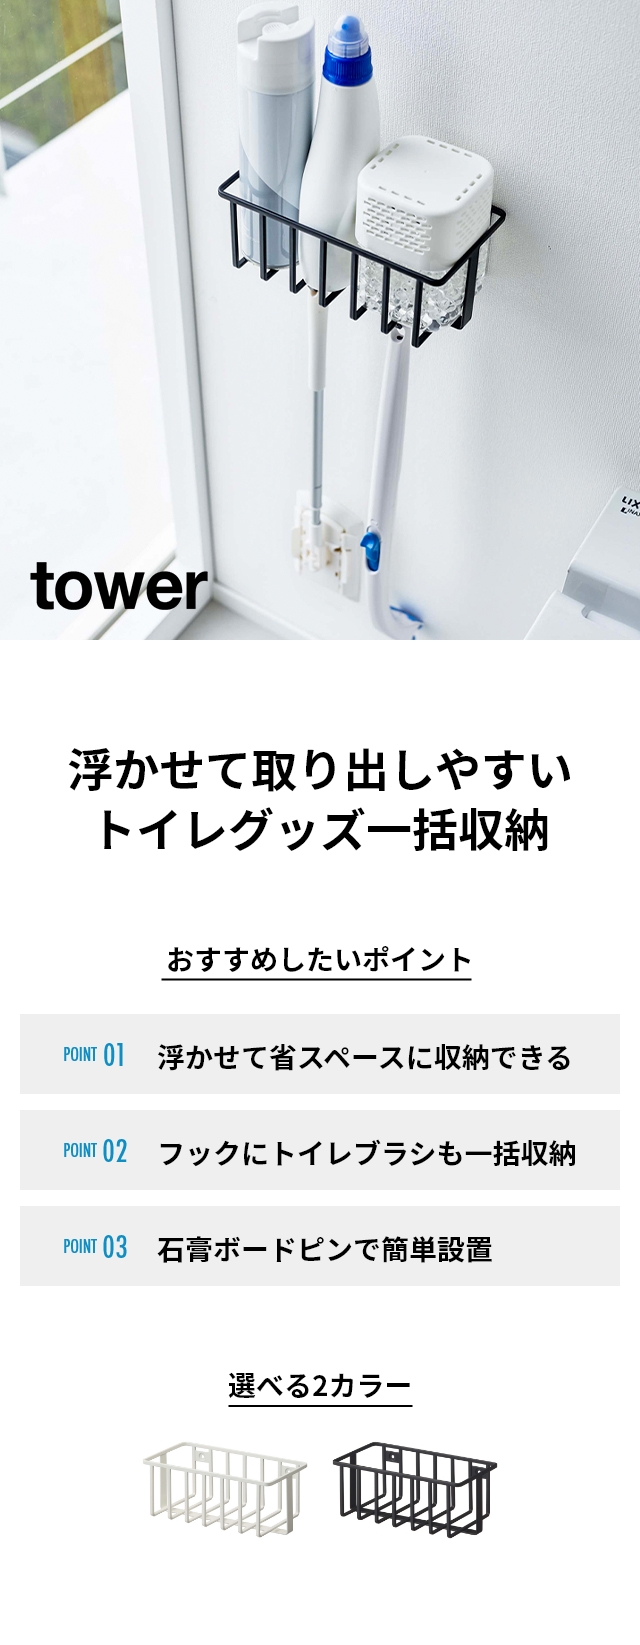 tower (タワー) ウォールトイレ用品収納ラック